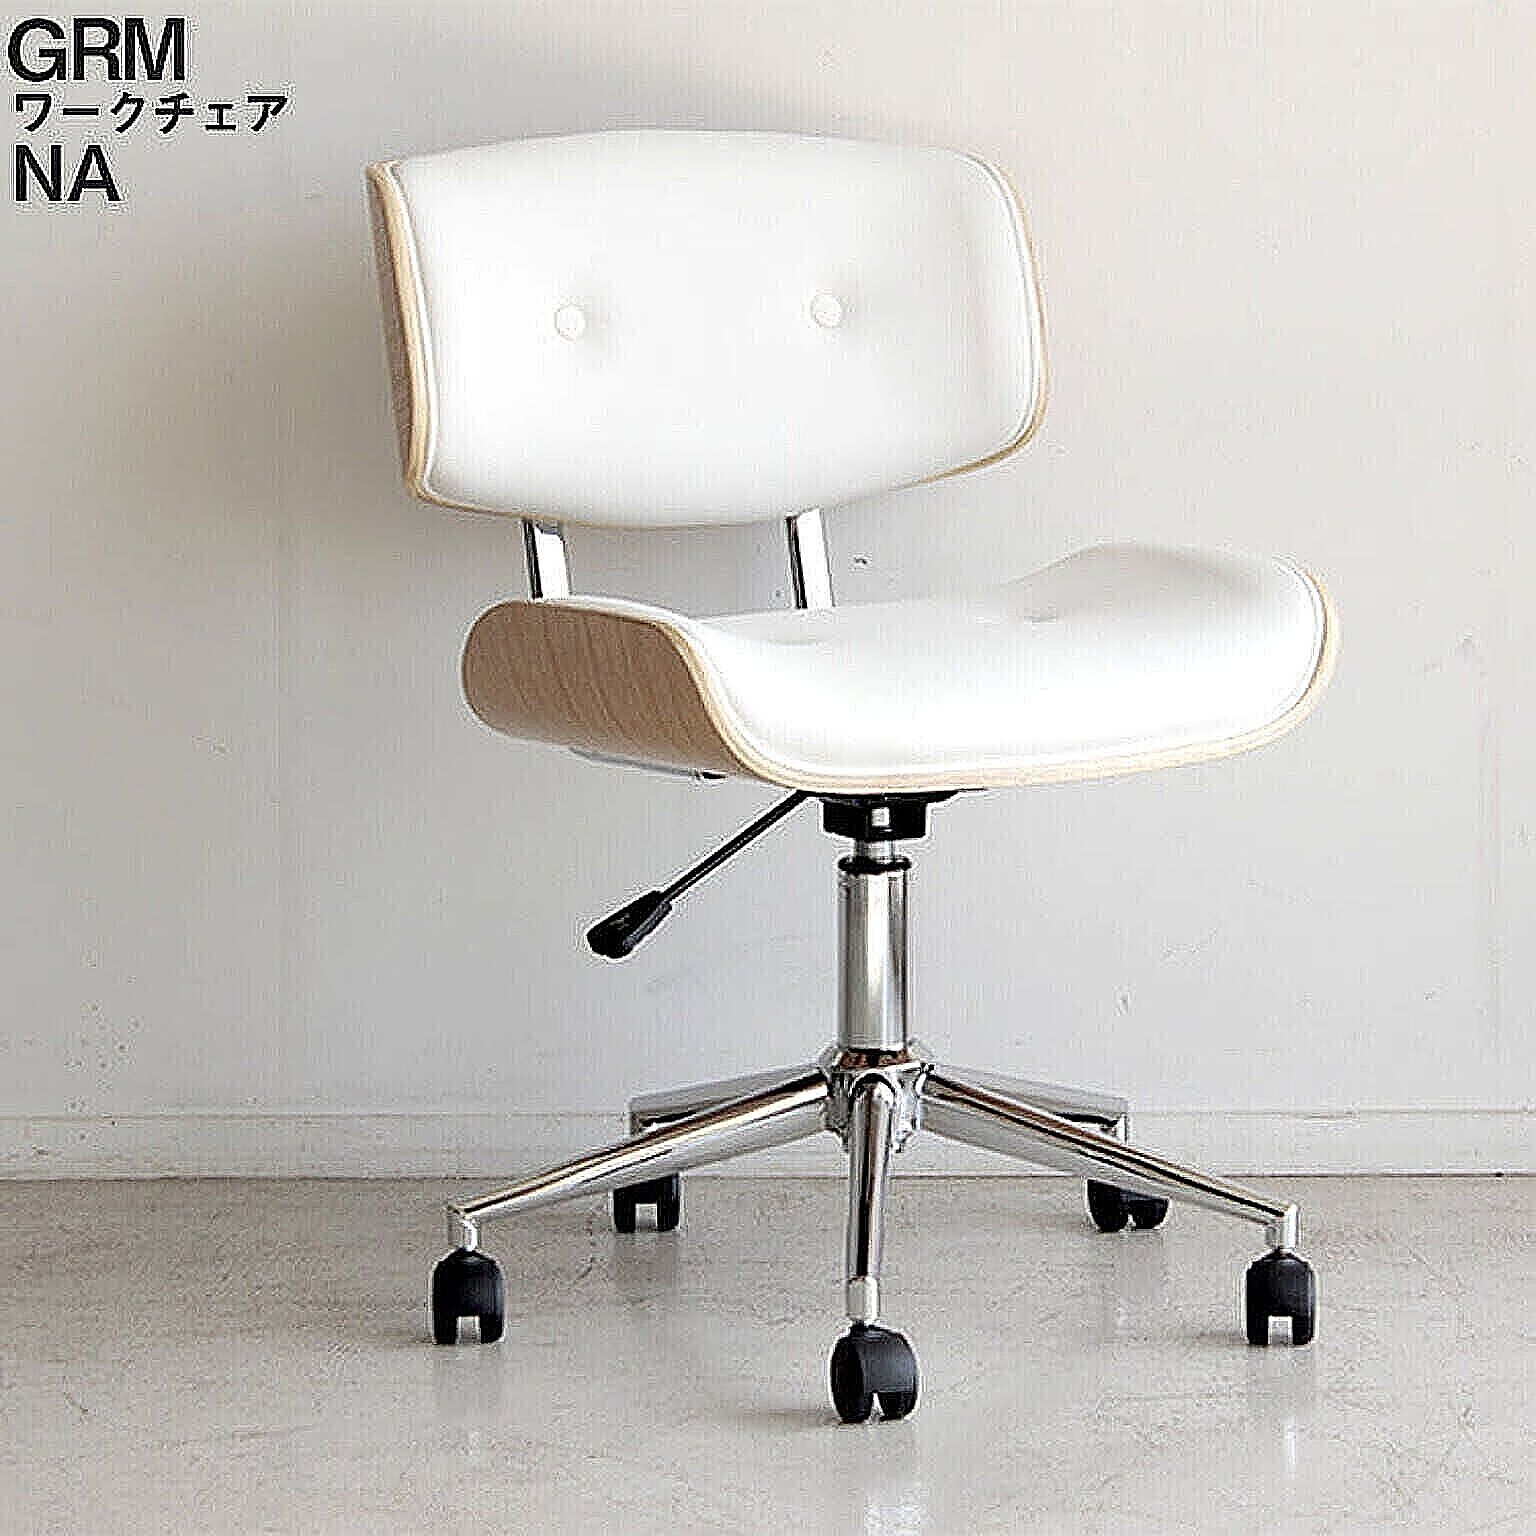 ワークチェア グラム GRM グラム ホワイト WH 椅子 ルームチェア オフィスチェア デスクチェア シンプル モダン 昇降式 回転式 組立 リモートワーク 東馬 